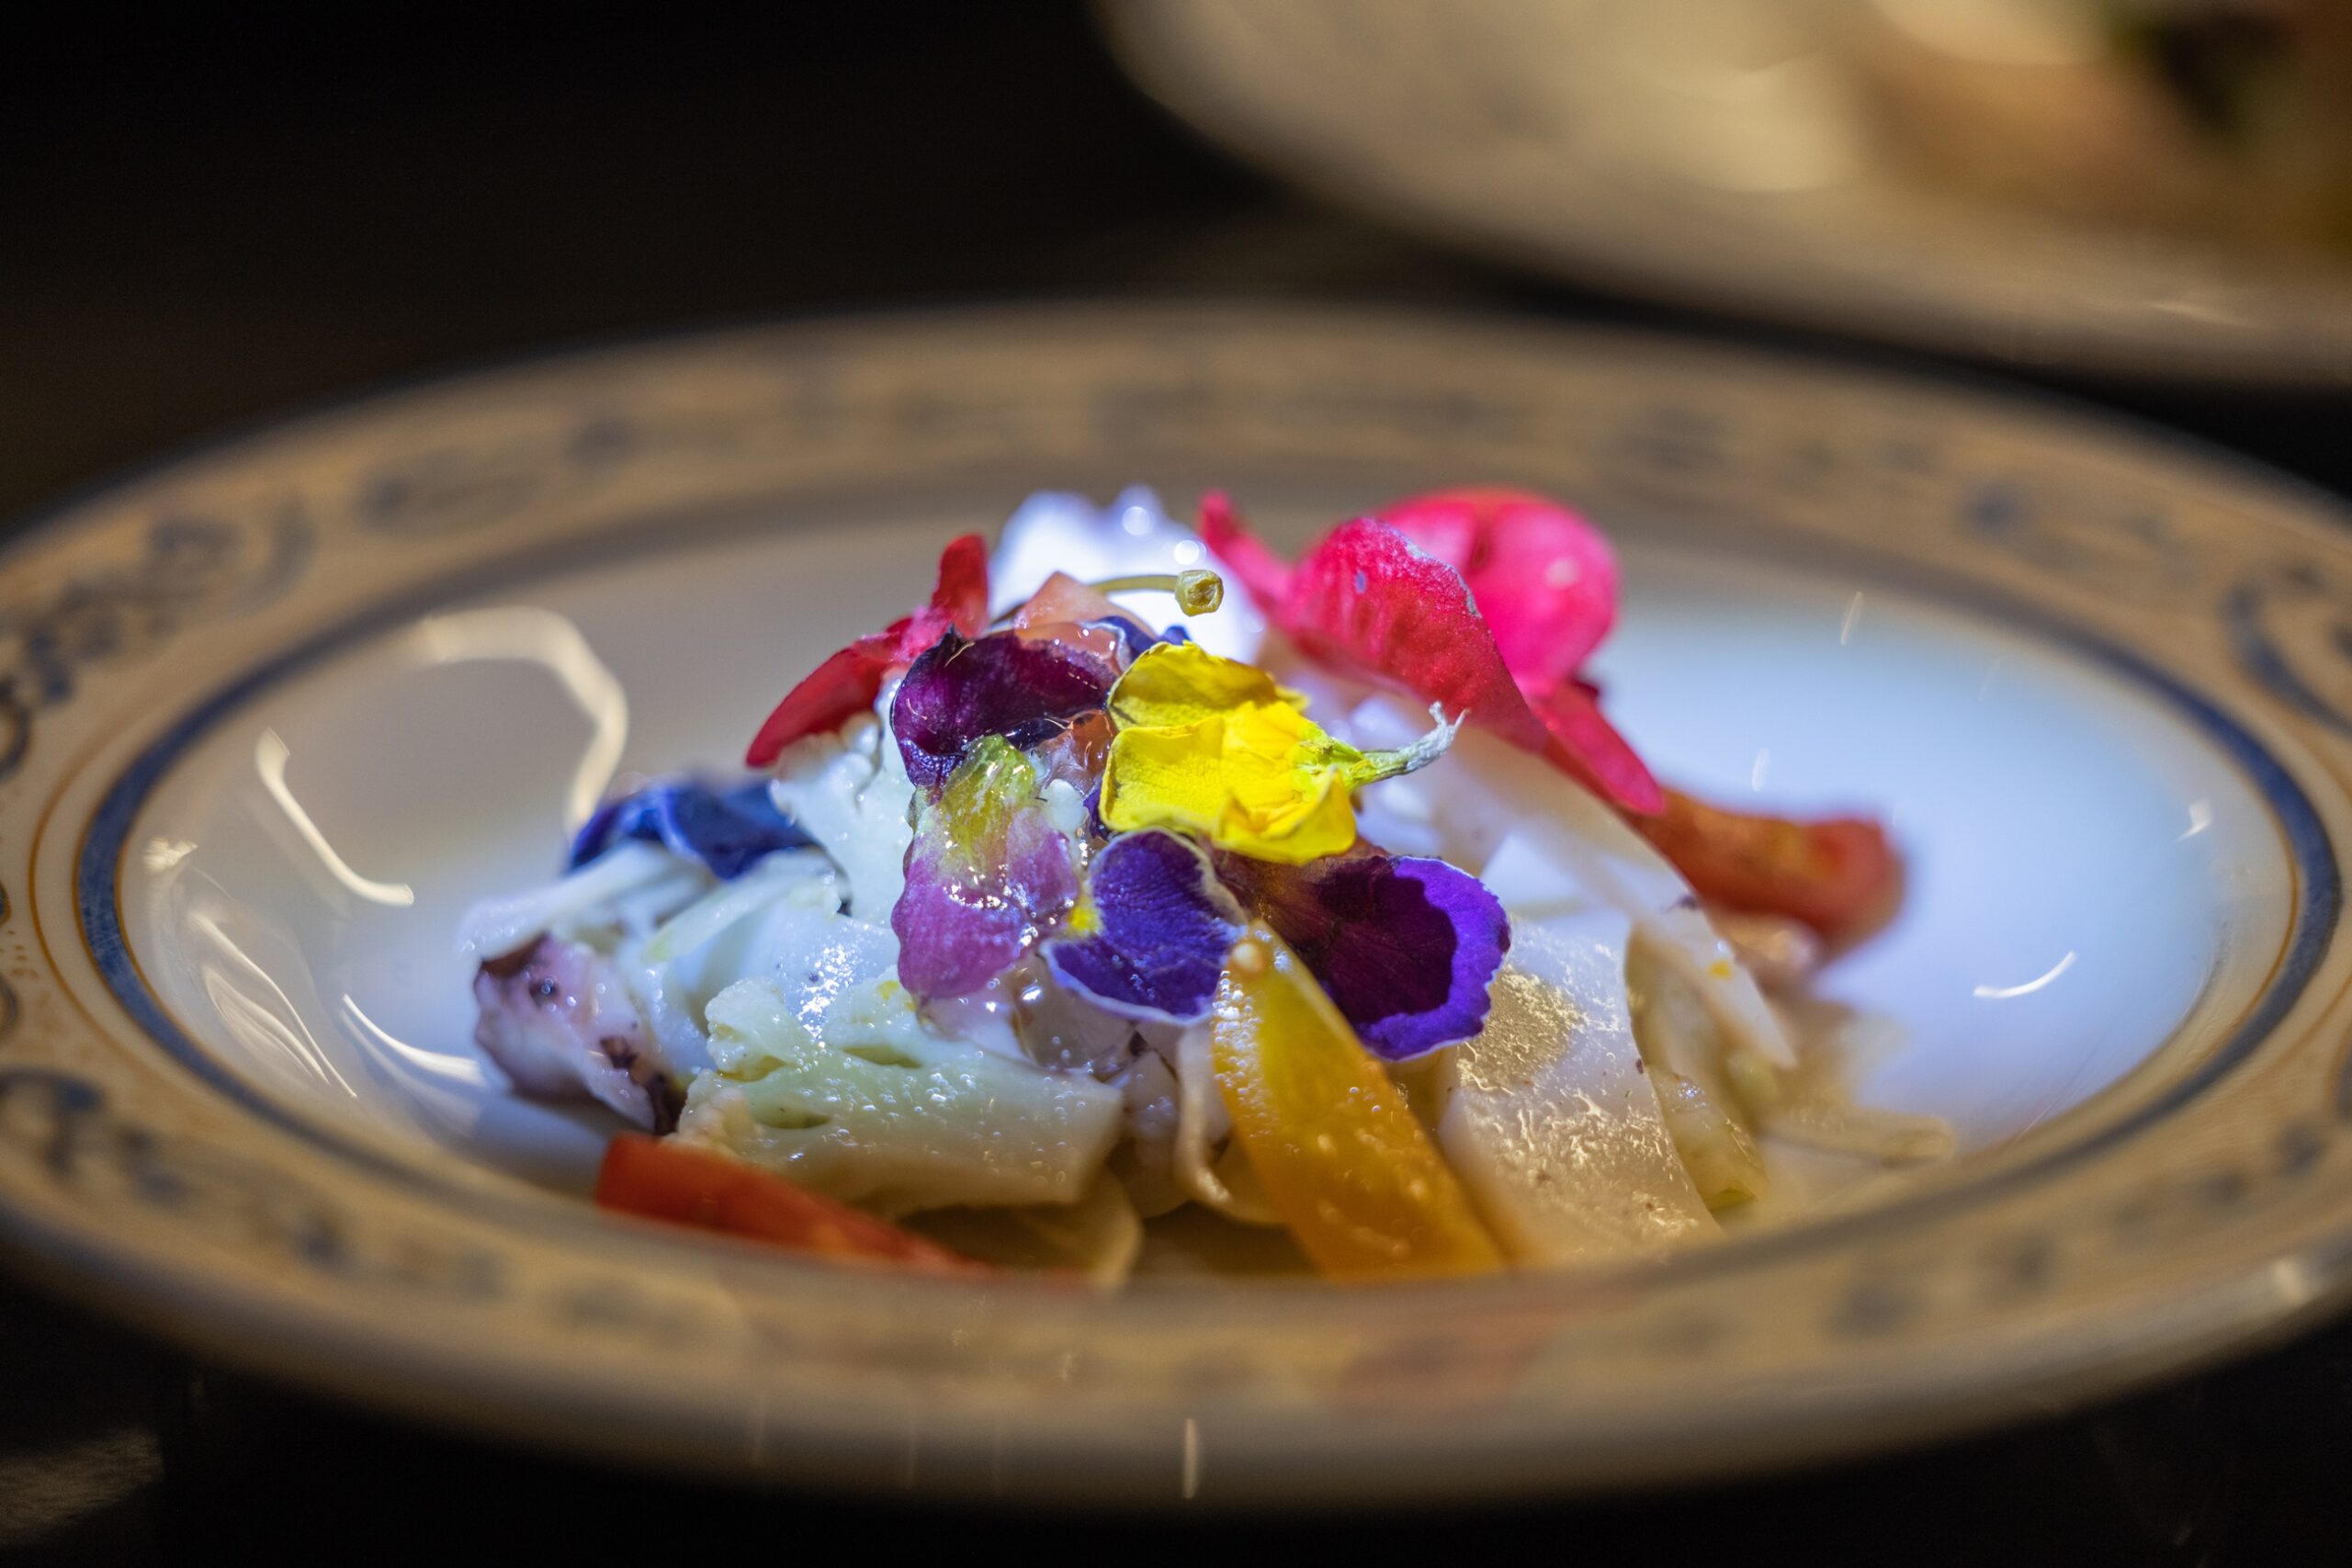 Festival Nazionale Cucina con i Fiori: a tavola con tutti i sensi accesi sabato 13 aprile e domenica 14 aprile con i percorsi sensoriali sui fiori